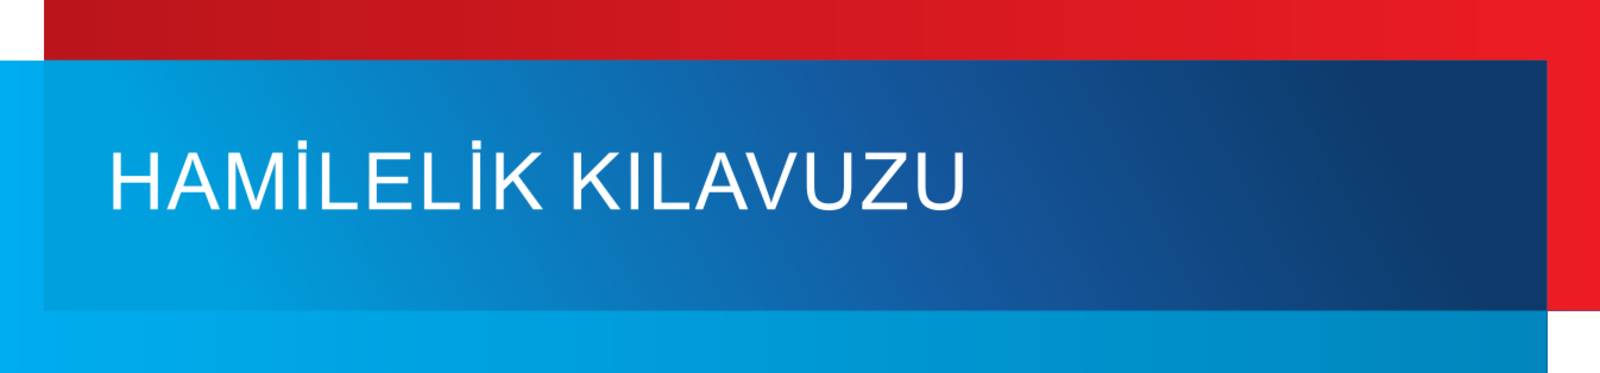 Grafisches Modul in den Farben Blau und Rot, dazu der Text: "HAMILELIK KILAVUZU".